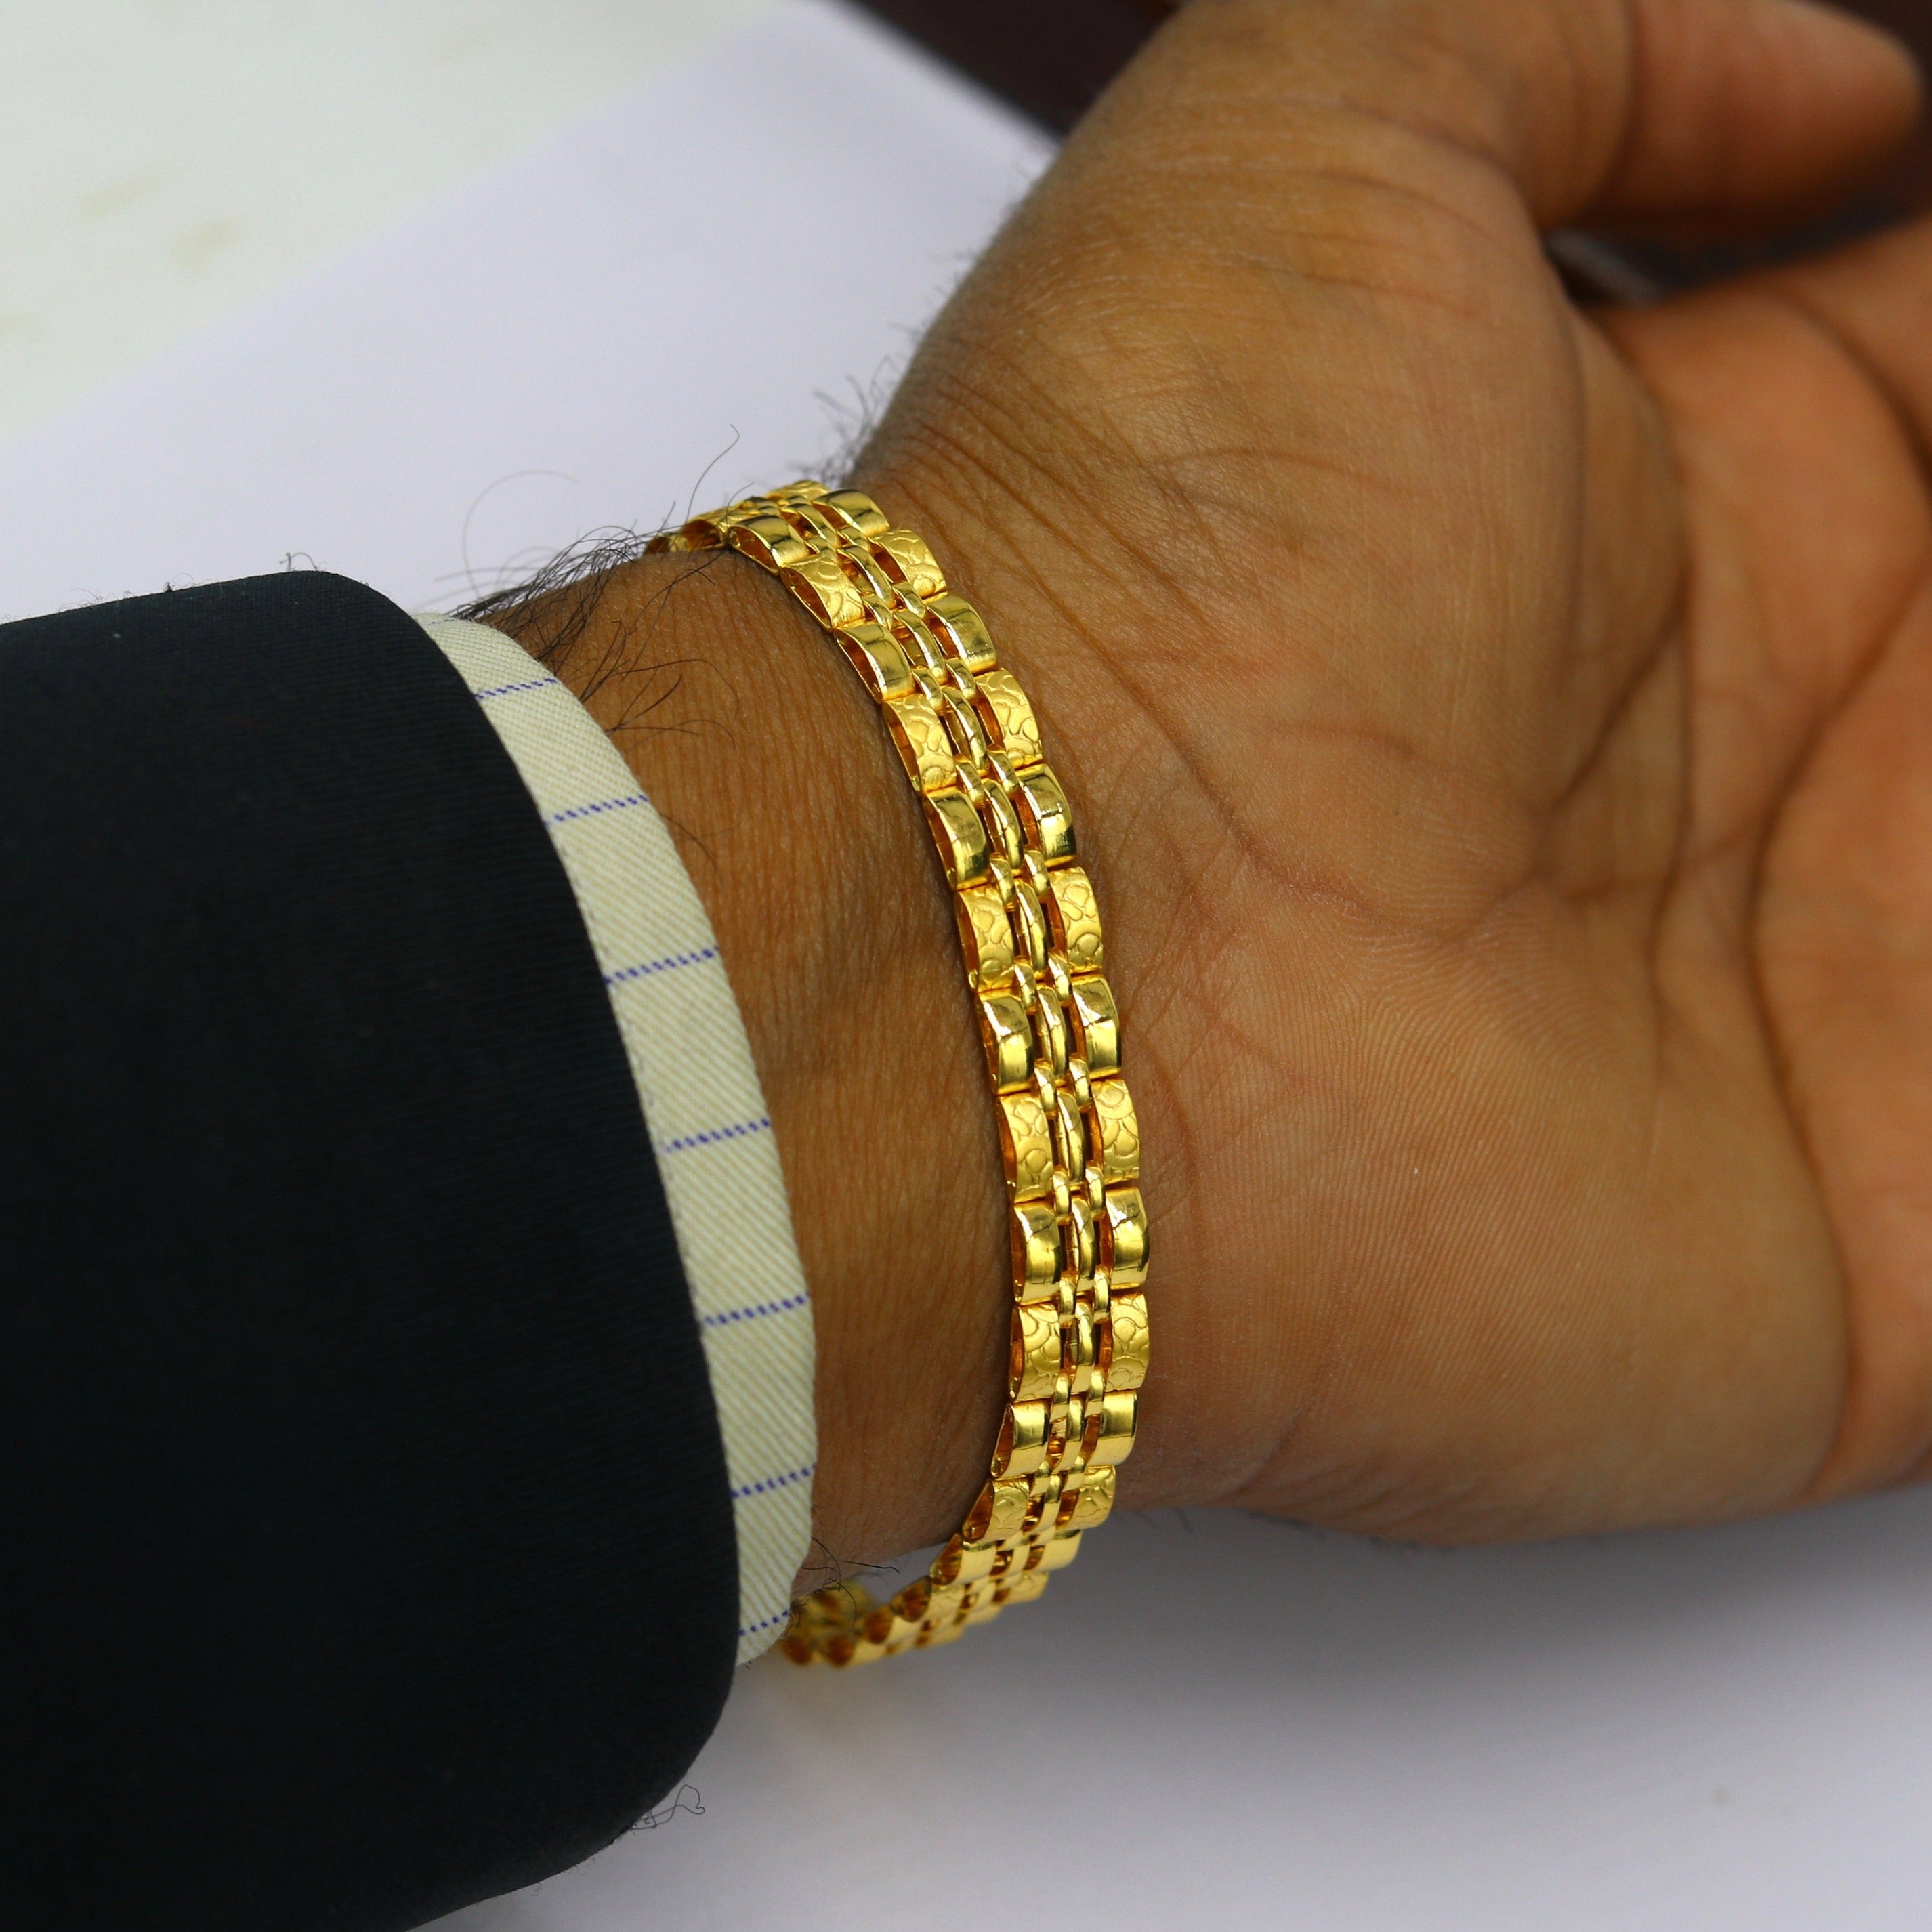 22kt pure gold customized men's stylish fancy gifting bangle bracelet india  | eBay